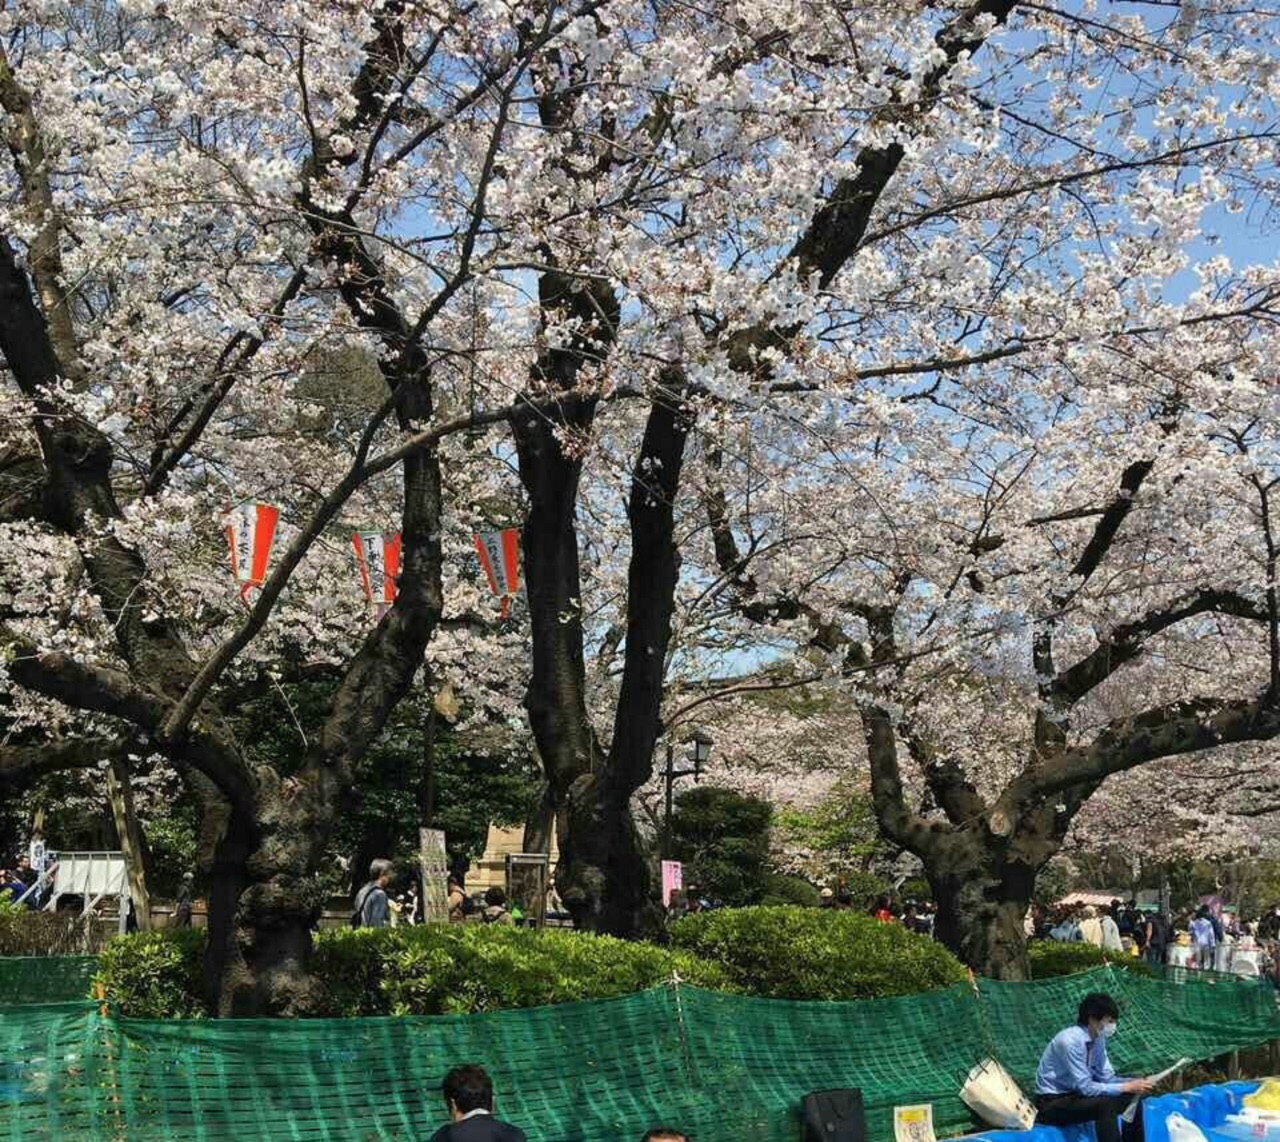 携程攻略 东京日比谷公园景点 在中心的一个公园 是一个免费的公园 每一天来的人还是挺多的 不过